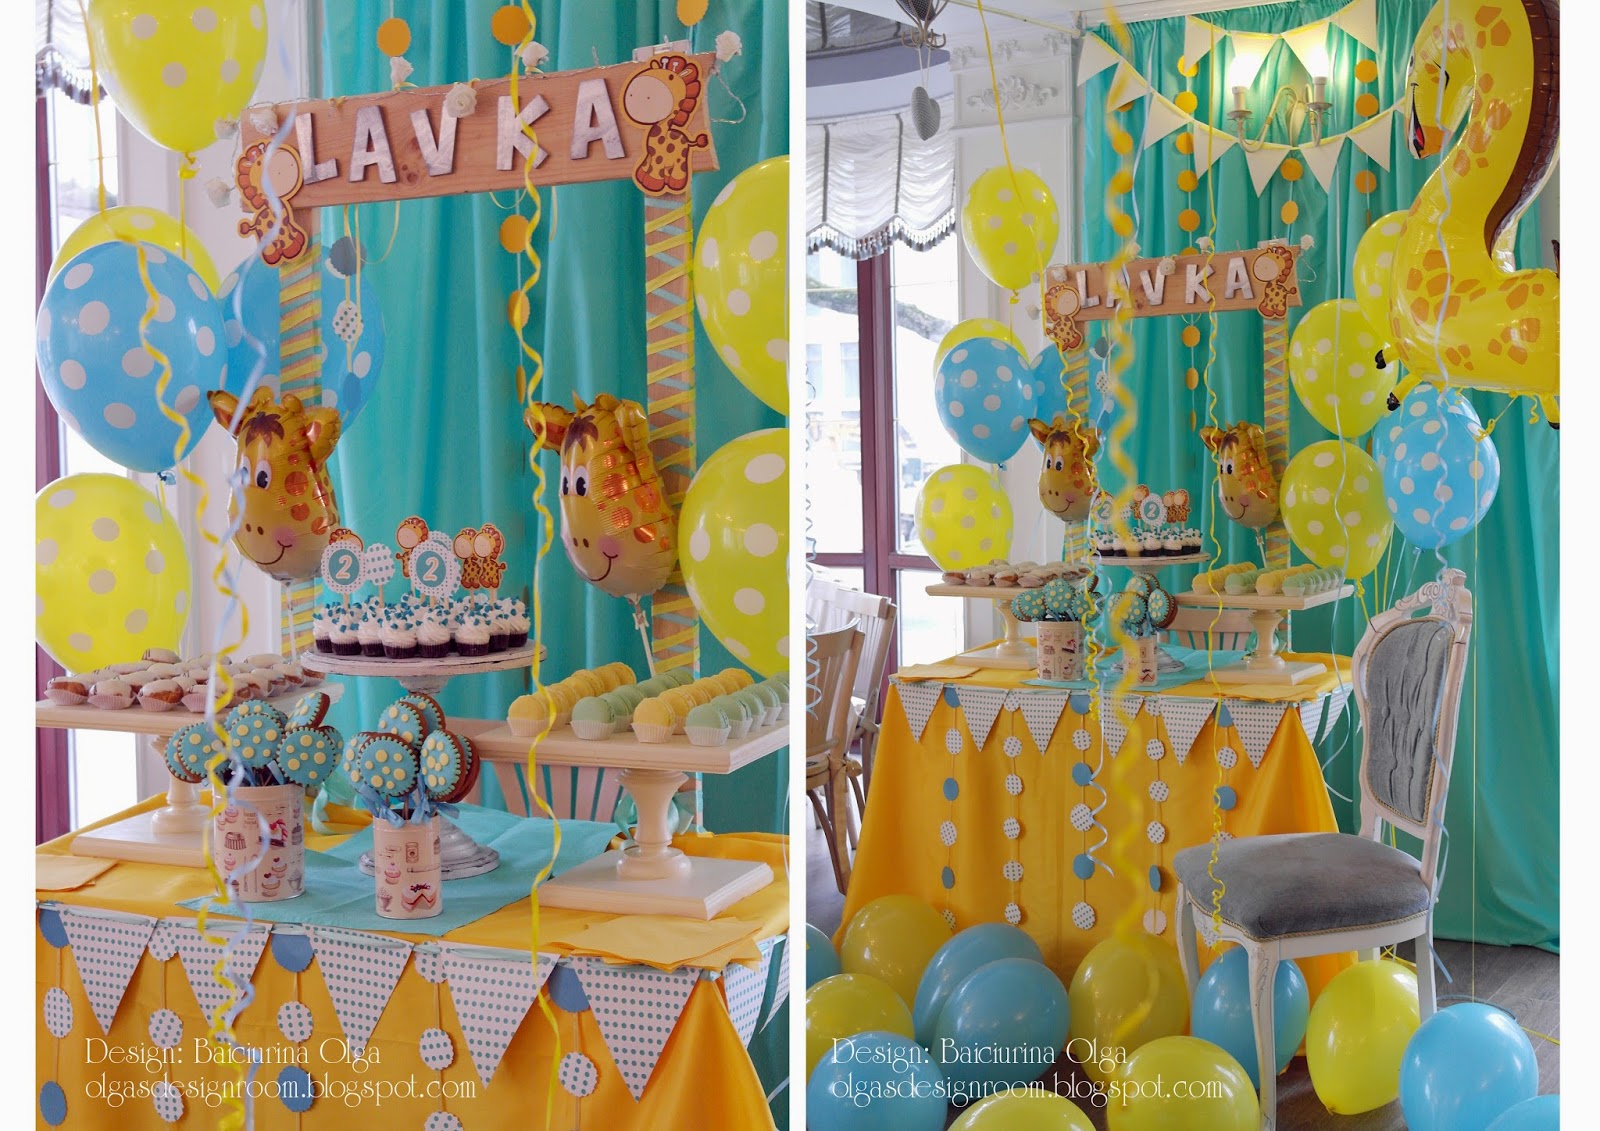 Olga Baiciurina. Decorațiuni pentru ziua de naștere a copilului - Giraffe birthday party theme!